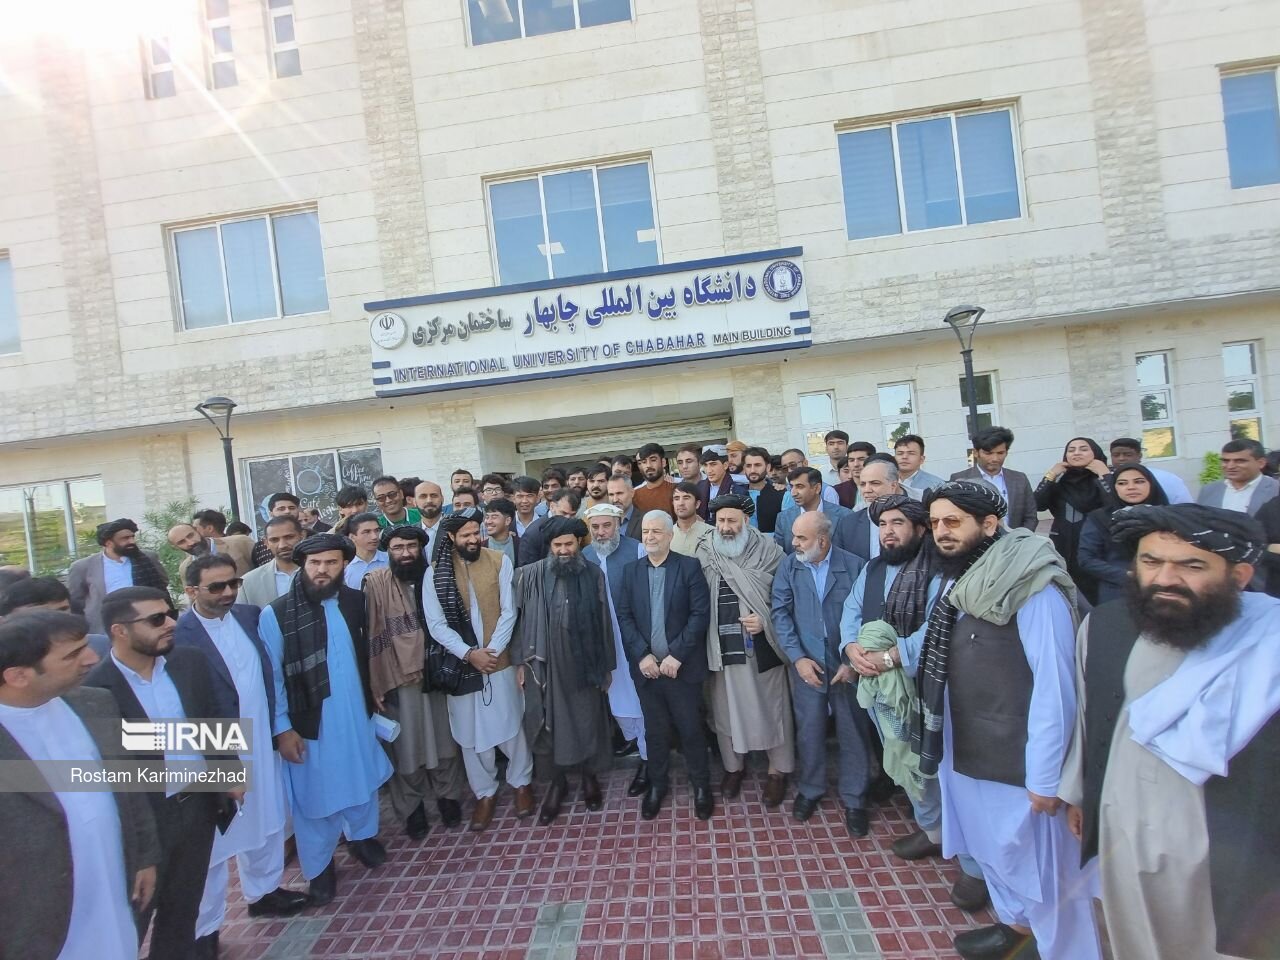 ۱۳۵ دانشجوی افغانستانی در دانشگاه بین المللی چابهار مشغول به تحصیل هستند